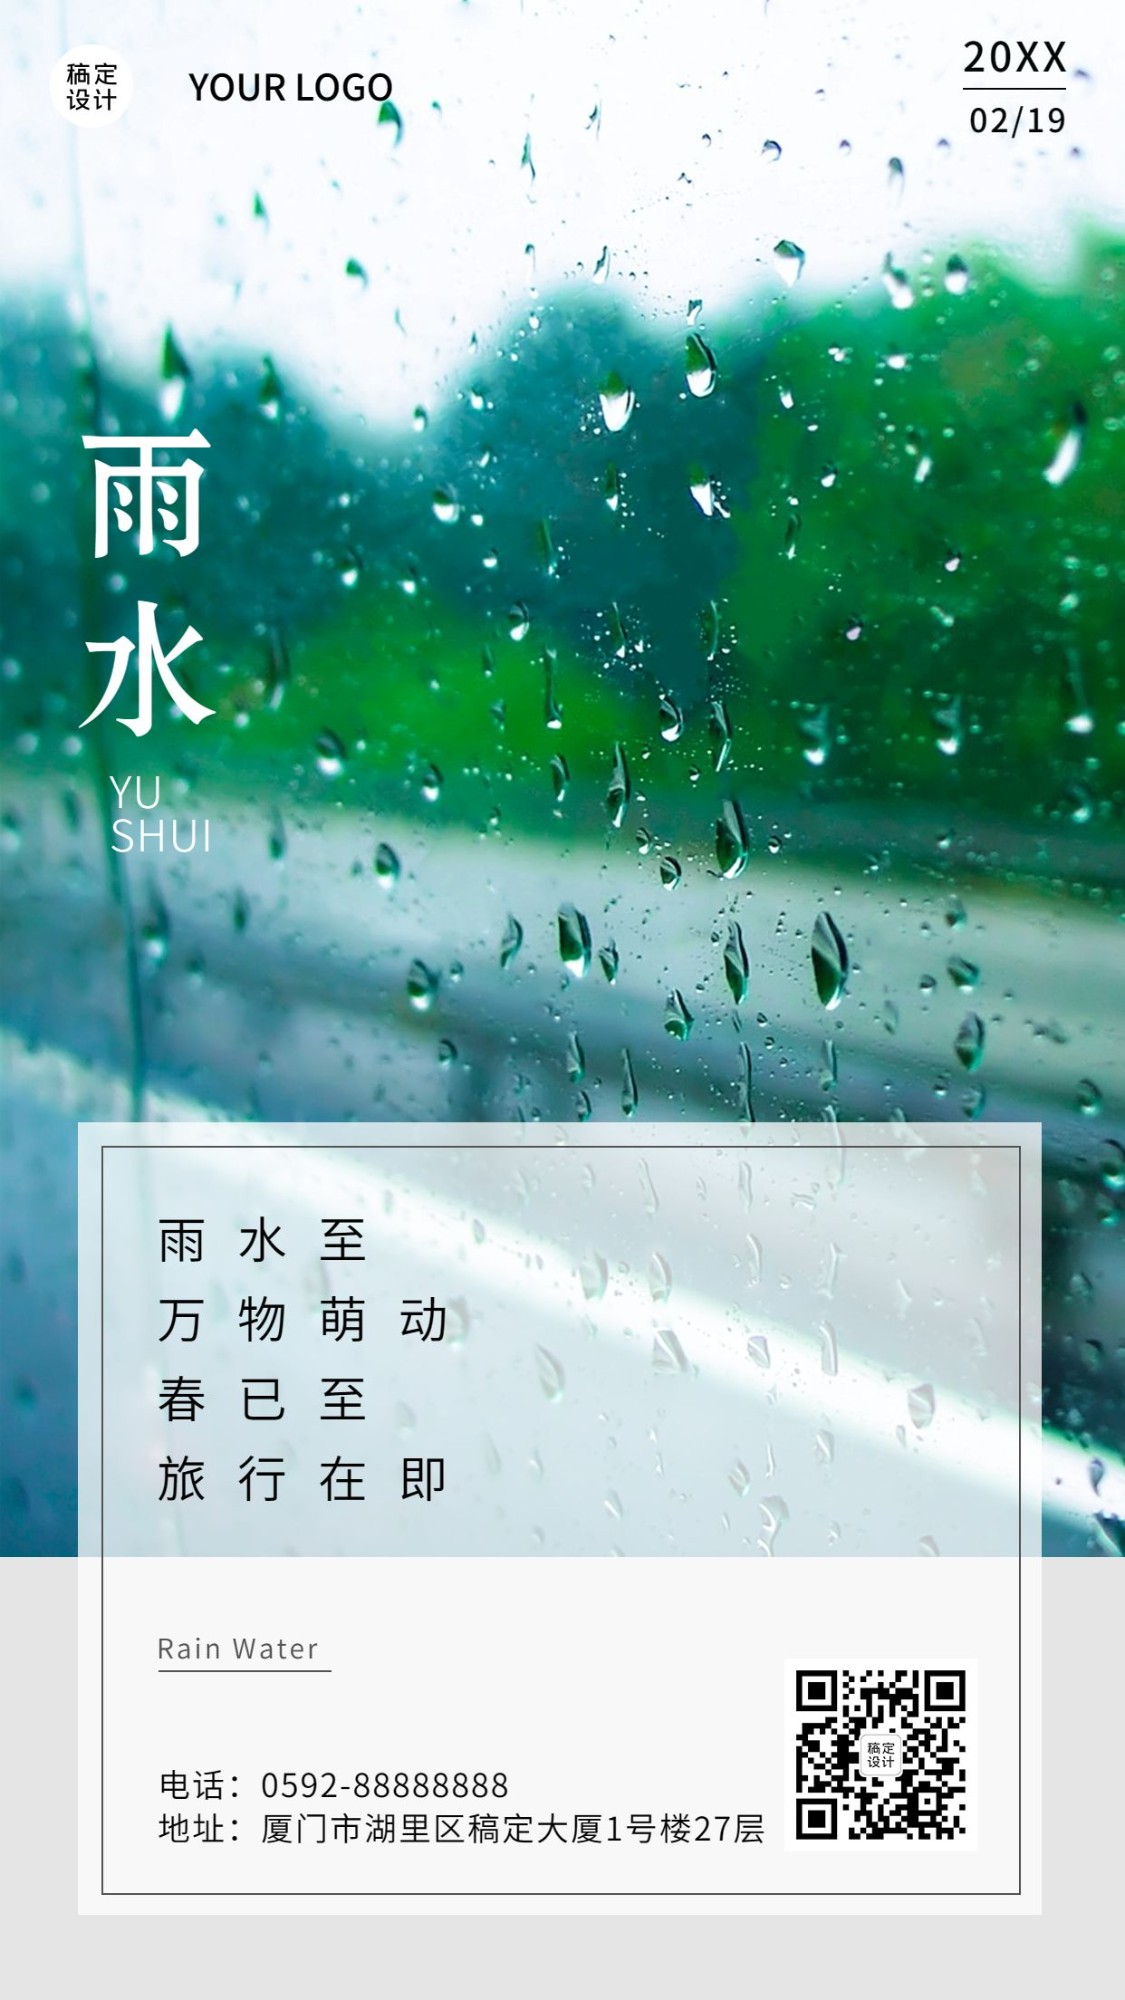 雨水节气祝福手机海报预览效果